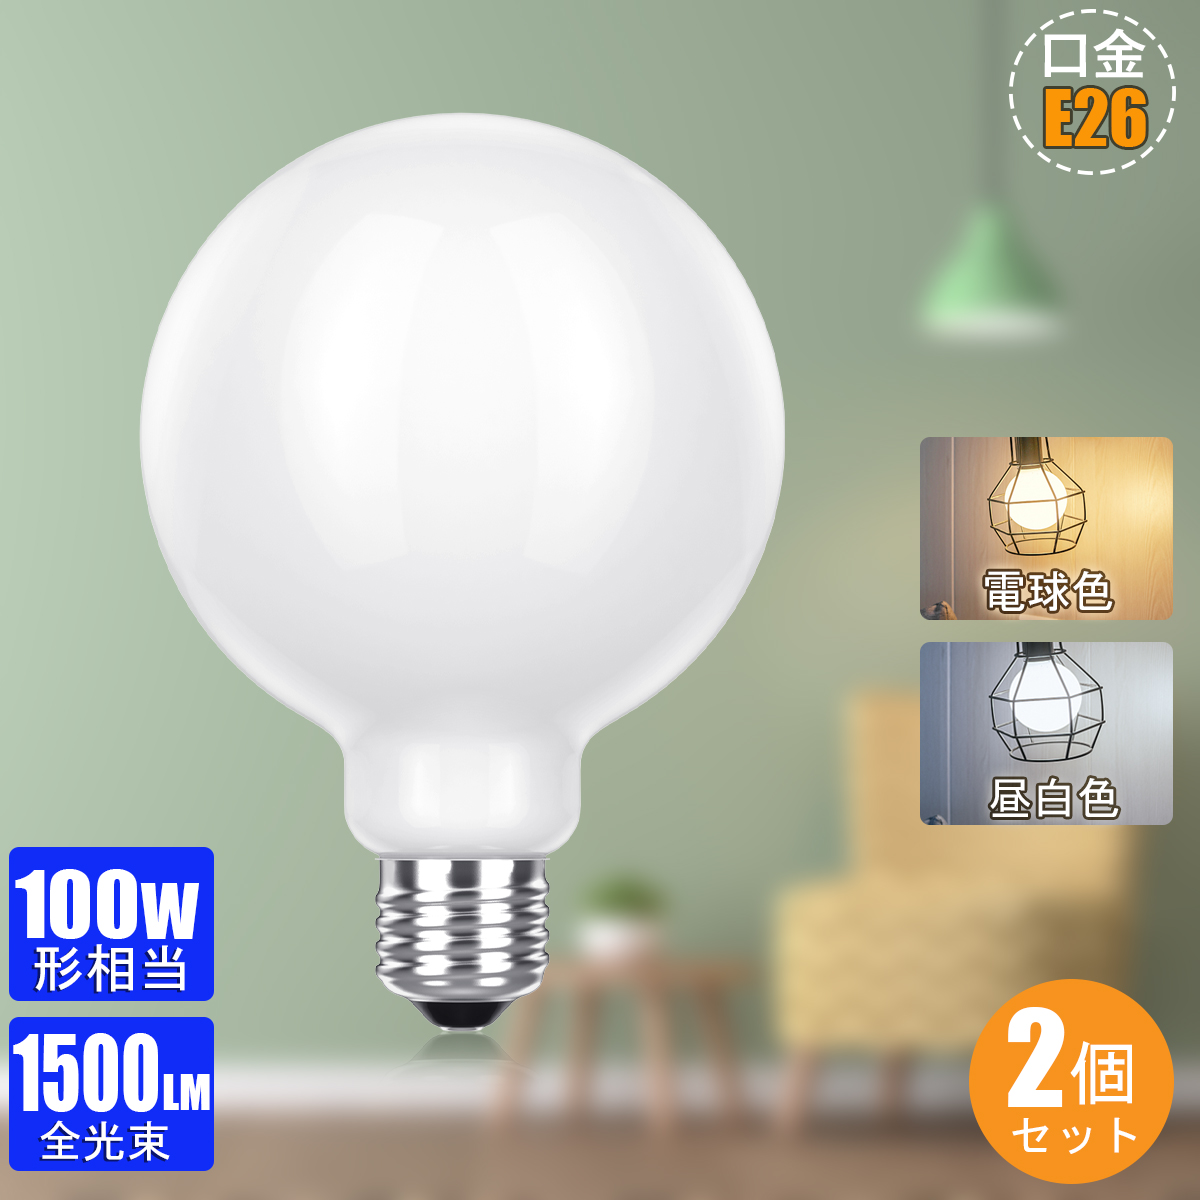 【楽天市場】【2個セット】LED電球 E26 100W形相当 2700K電球色